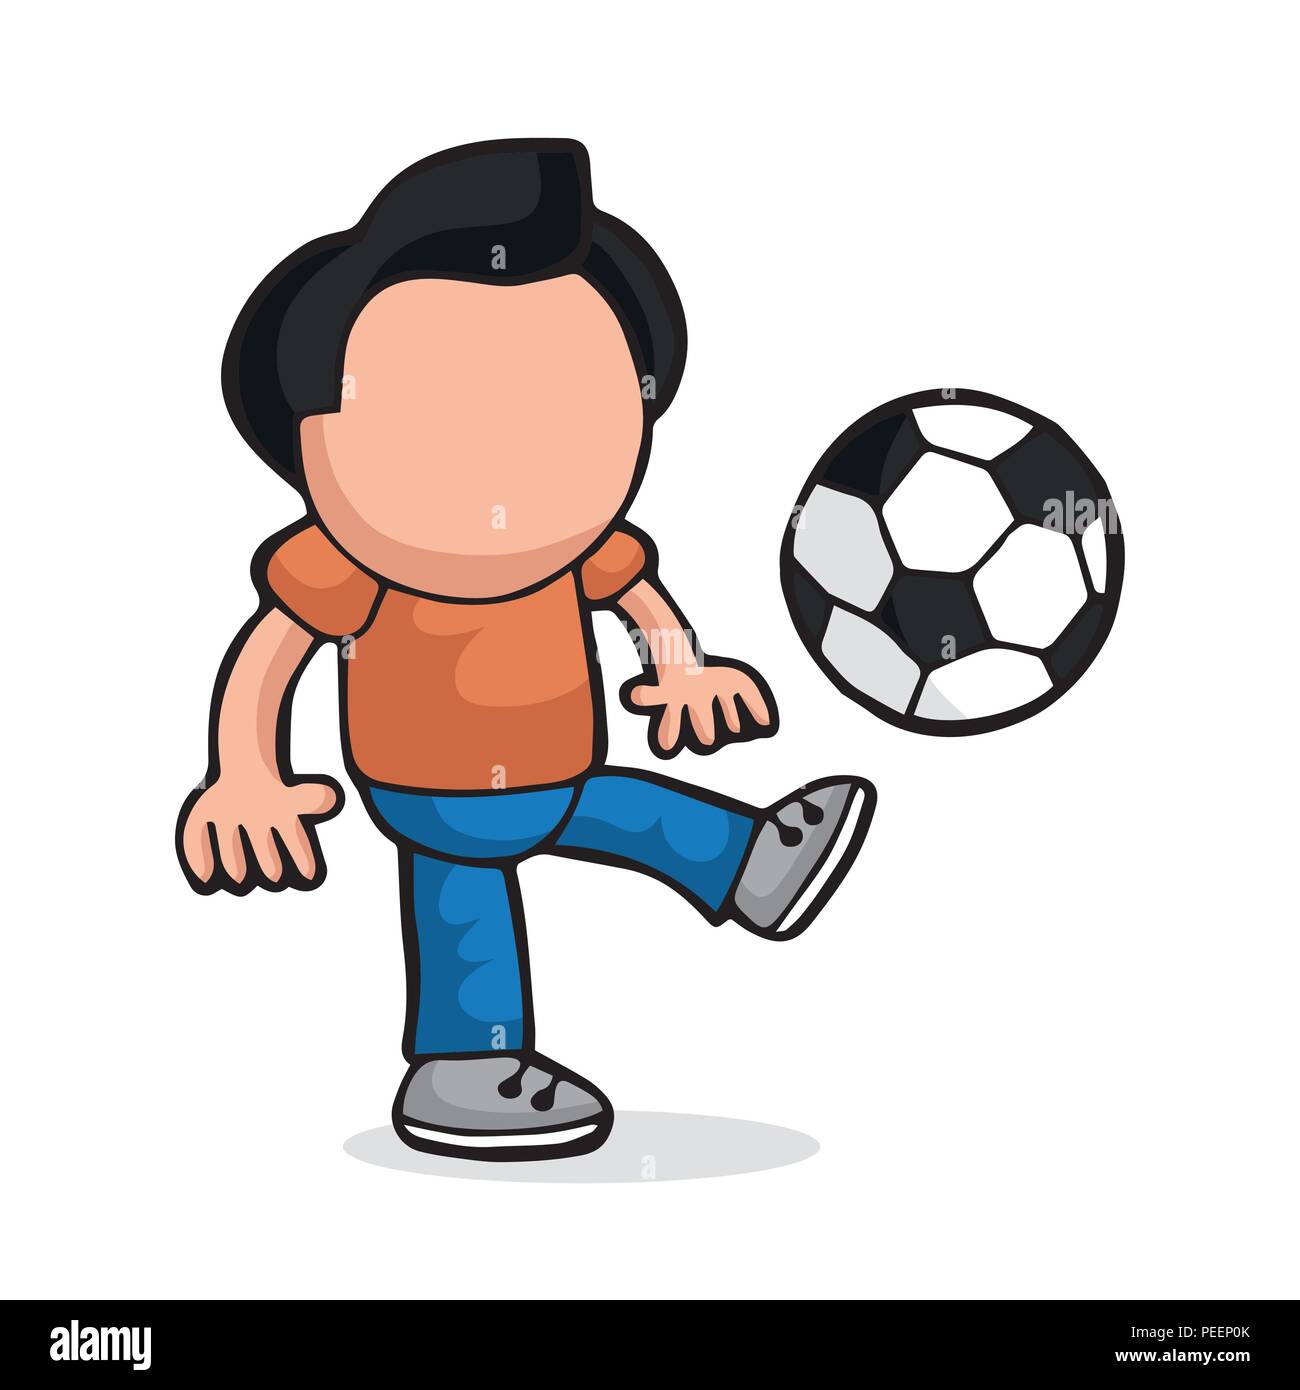 Juego De Fútbol Muchacho De La Historieta Ilustraciones svg, vectoriales,  clip art vectorizado libre de derechos. Image 27657265